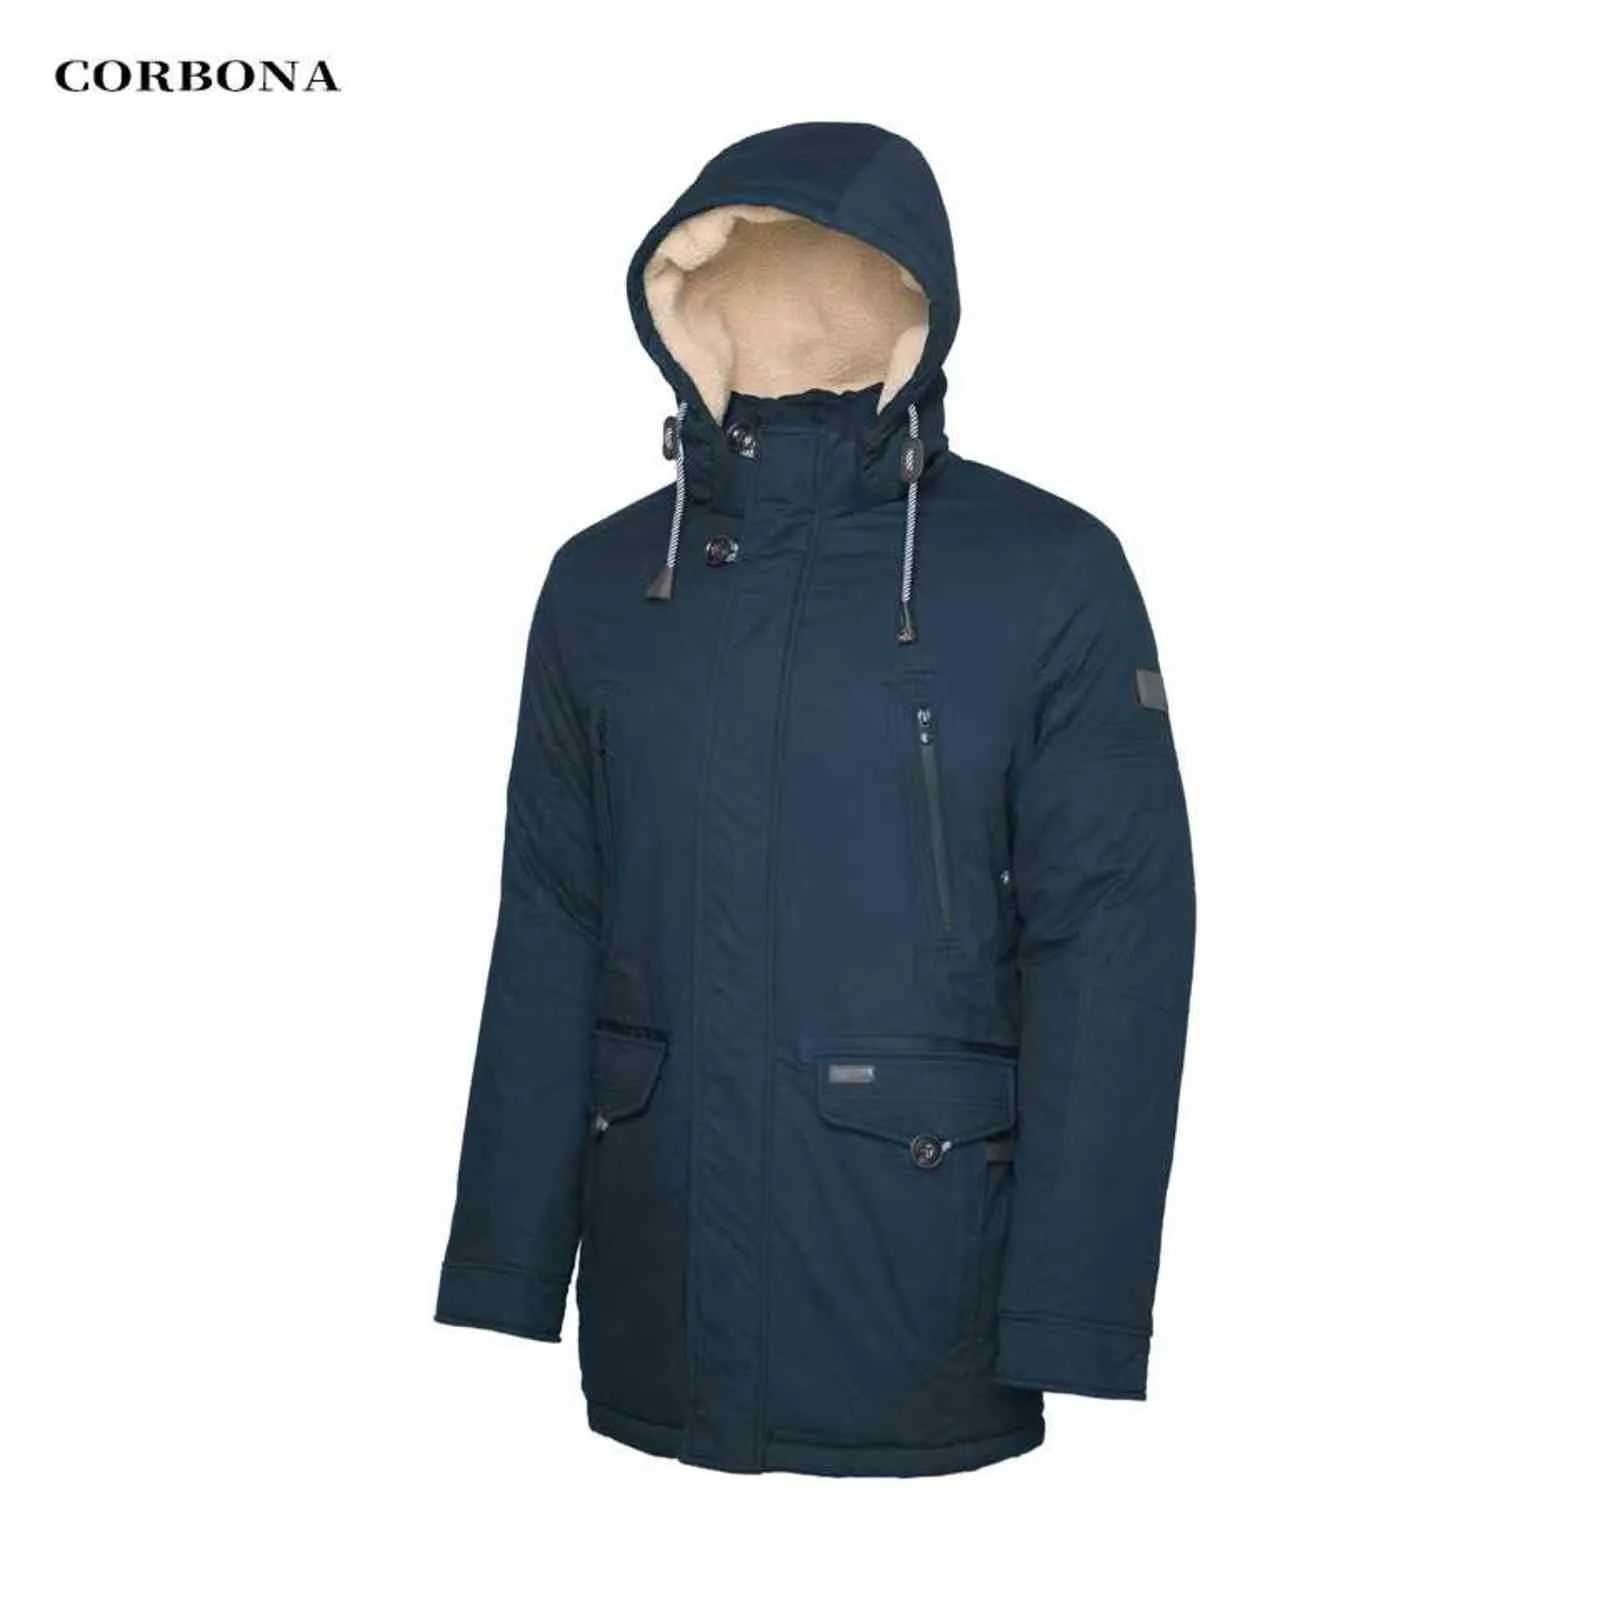 CORBONA Haute Qualité Chaud Coton Vêtements Veste Homme Business Casual Mi-Longueur Mode Épaissir Manteau Laine d'Agneau dans le Chapeau 211103